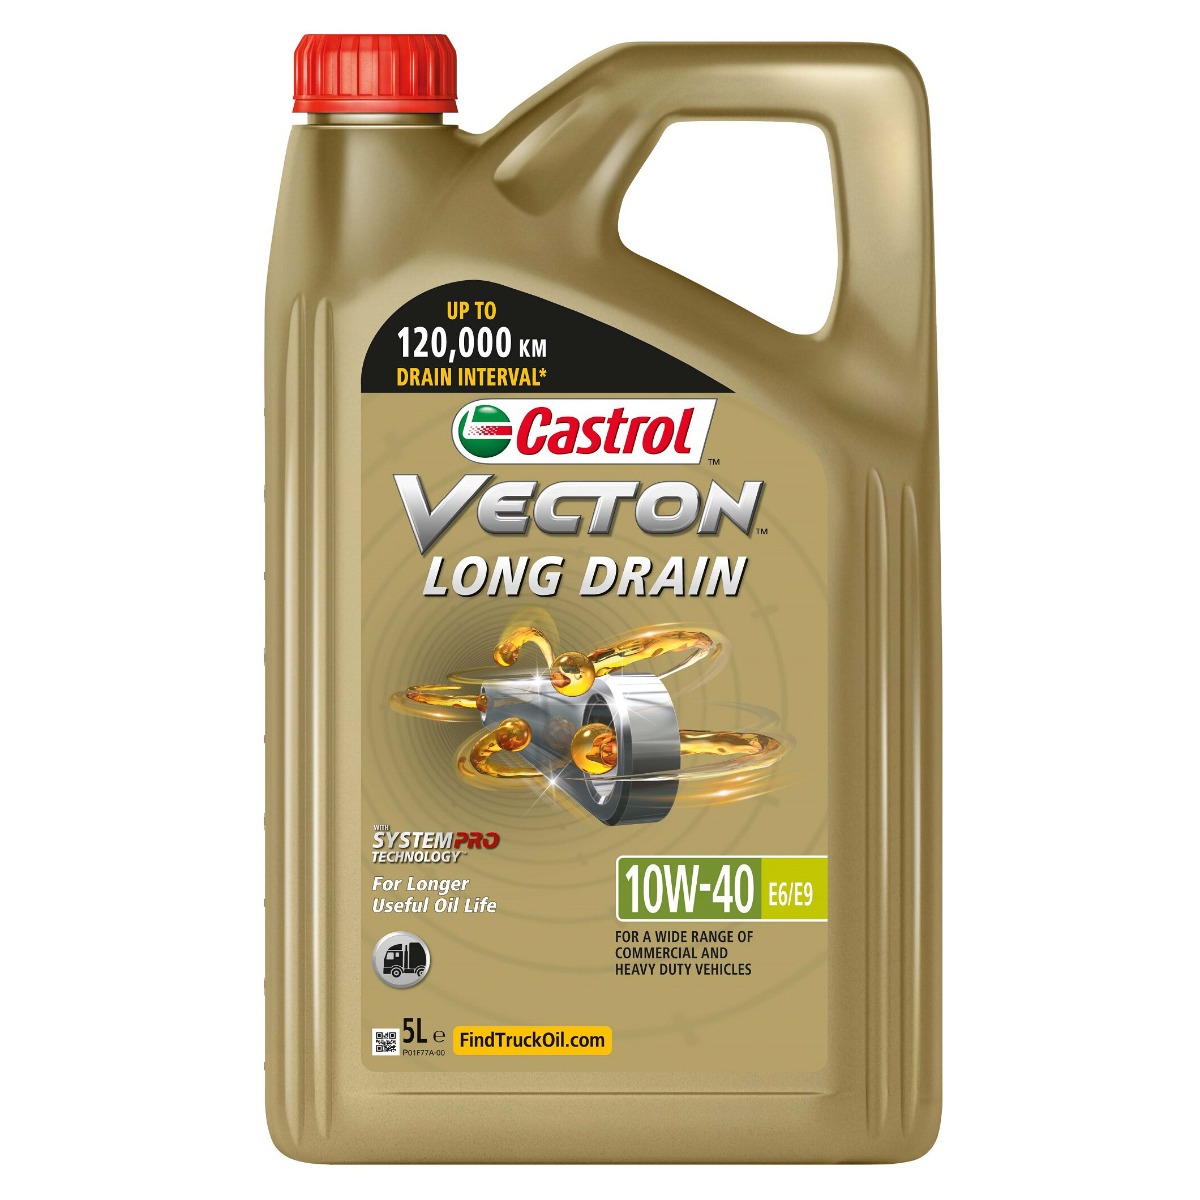 Castrol 15F3D1 Vecton Long Drain 10W-40 E6/E9 Truck Oil 5L